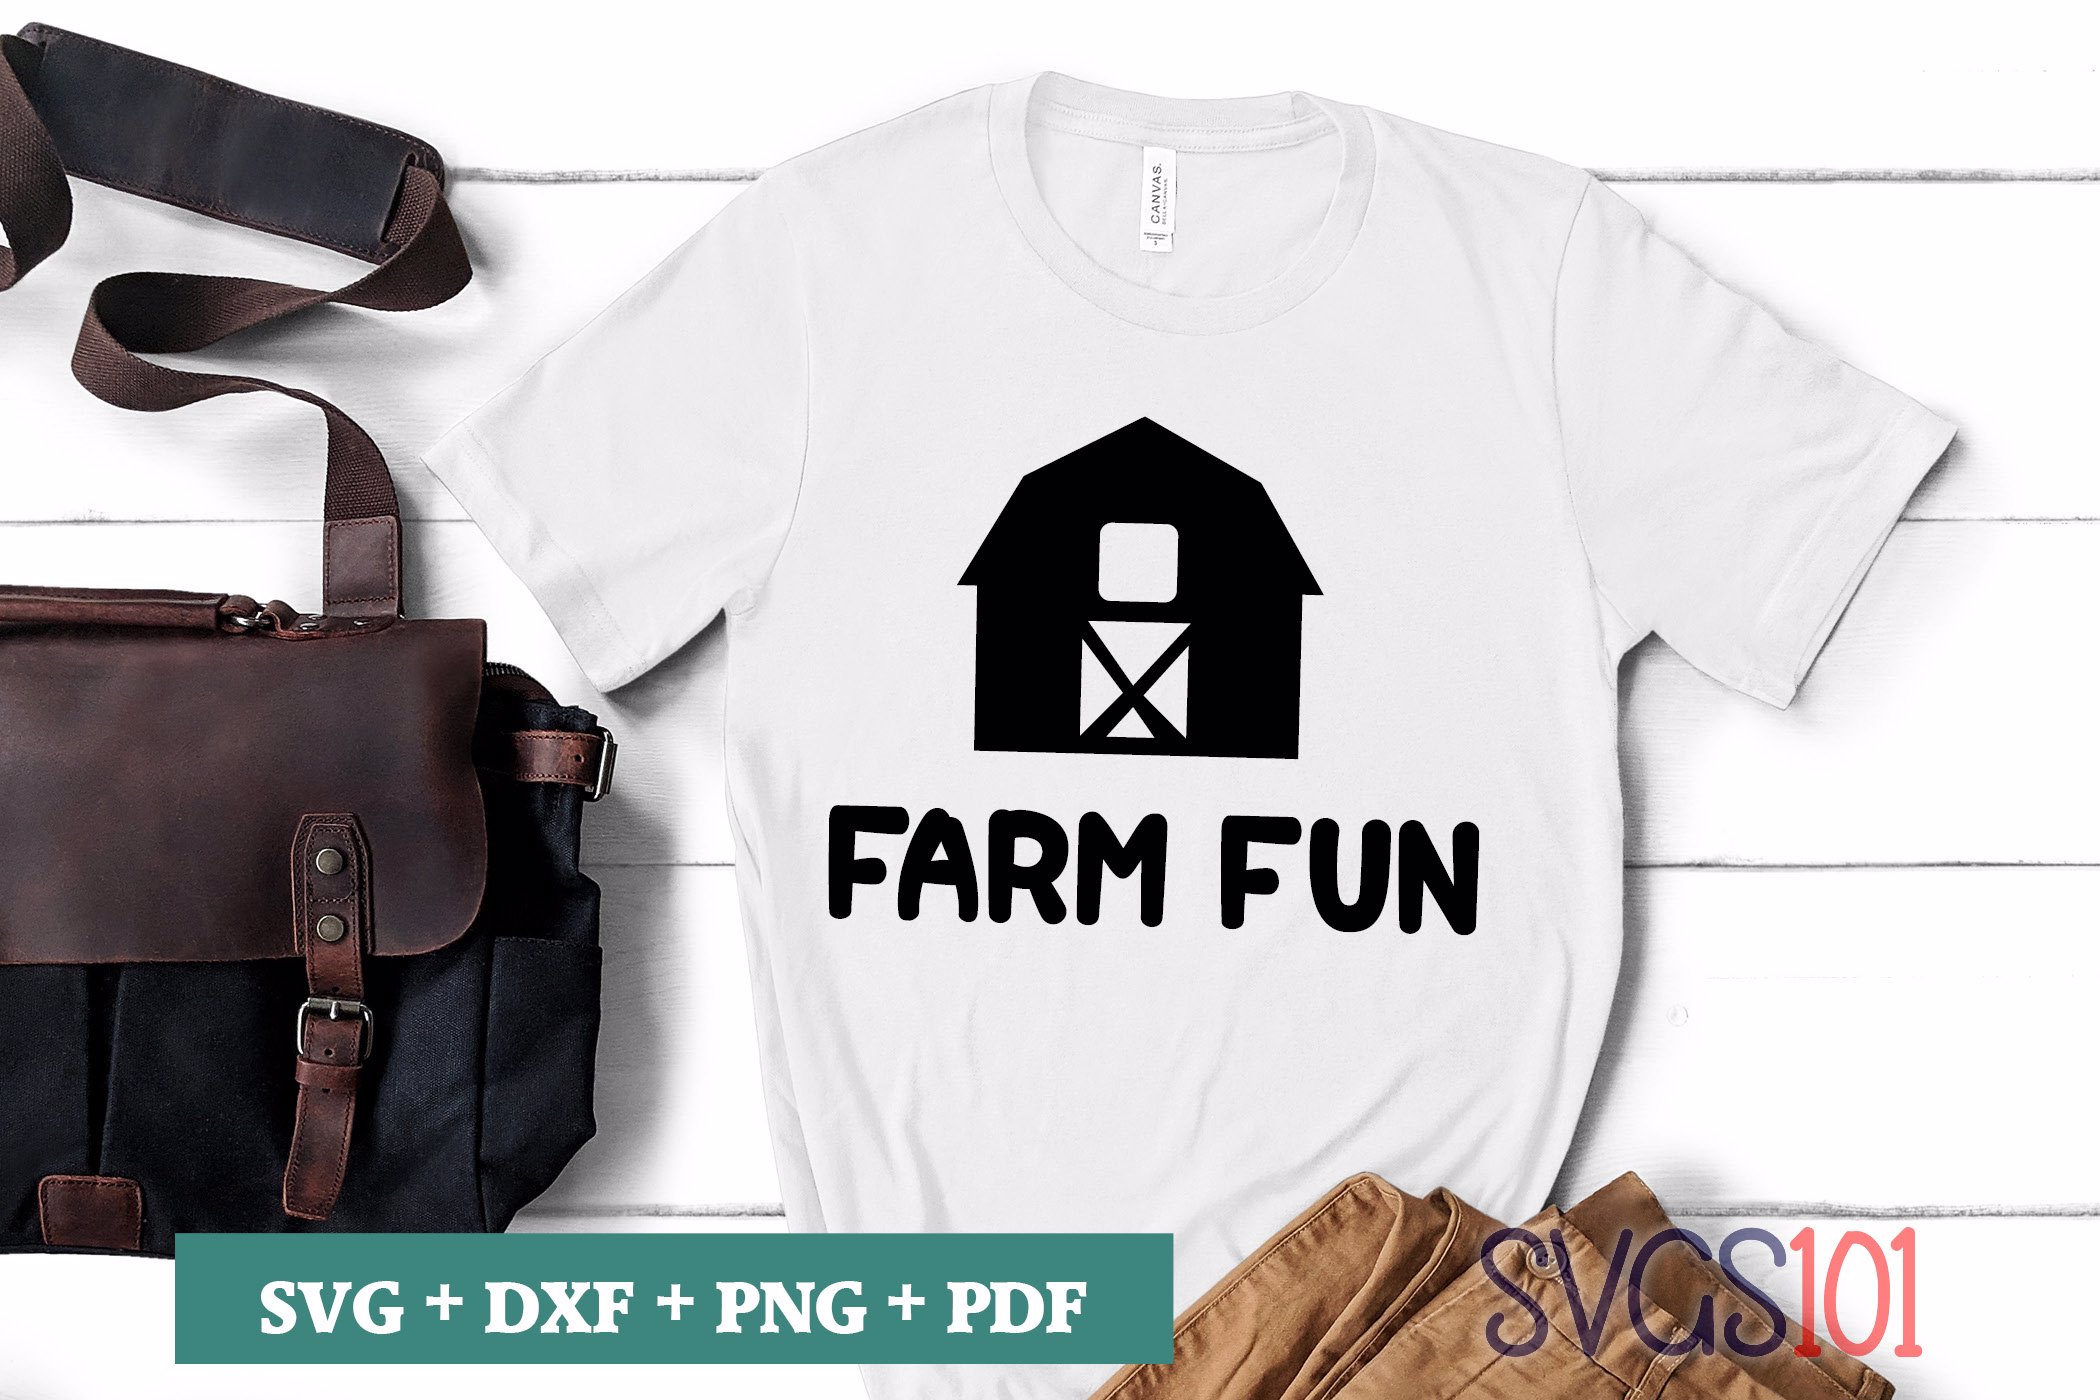 Farm Fun